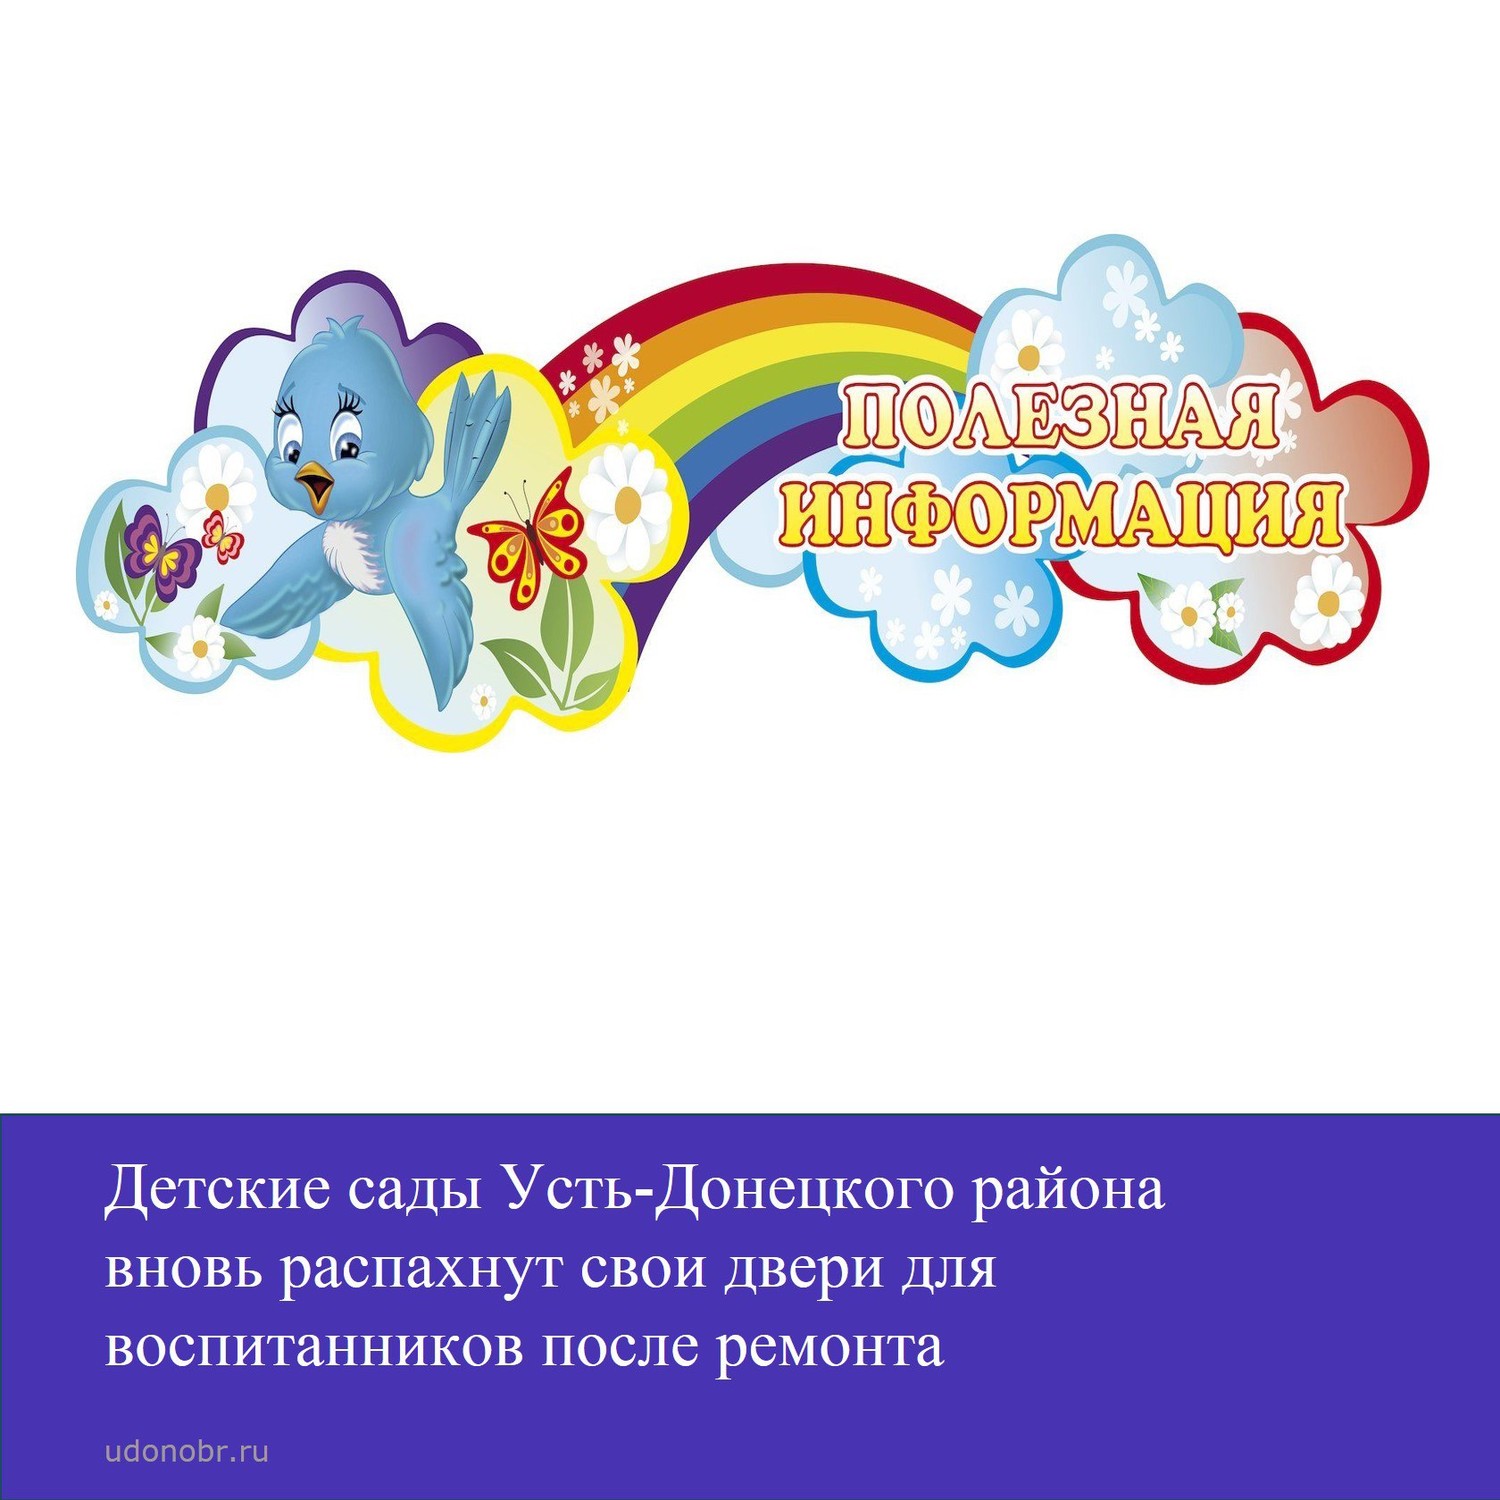 Детские сады Усть-Донецкого района вновь распахнут свои двери для воспитанников после ремонта